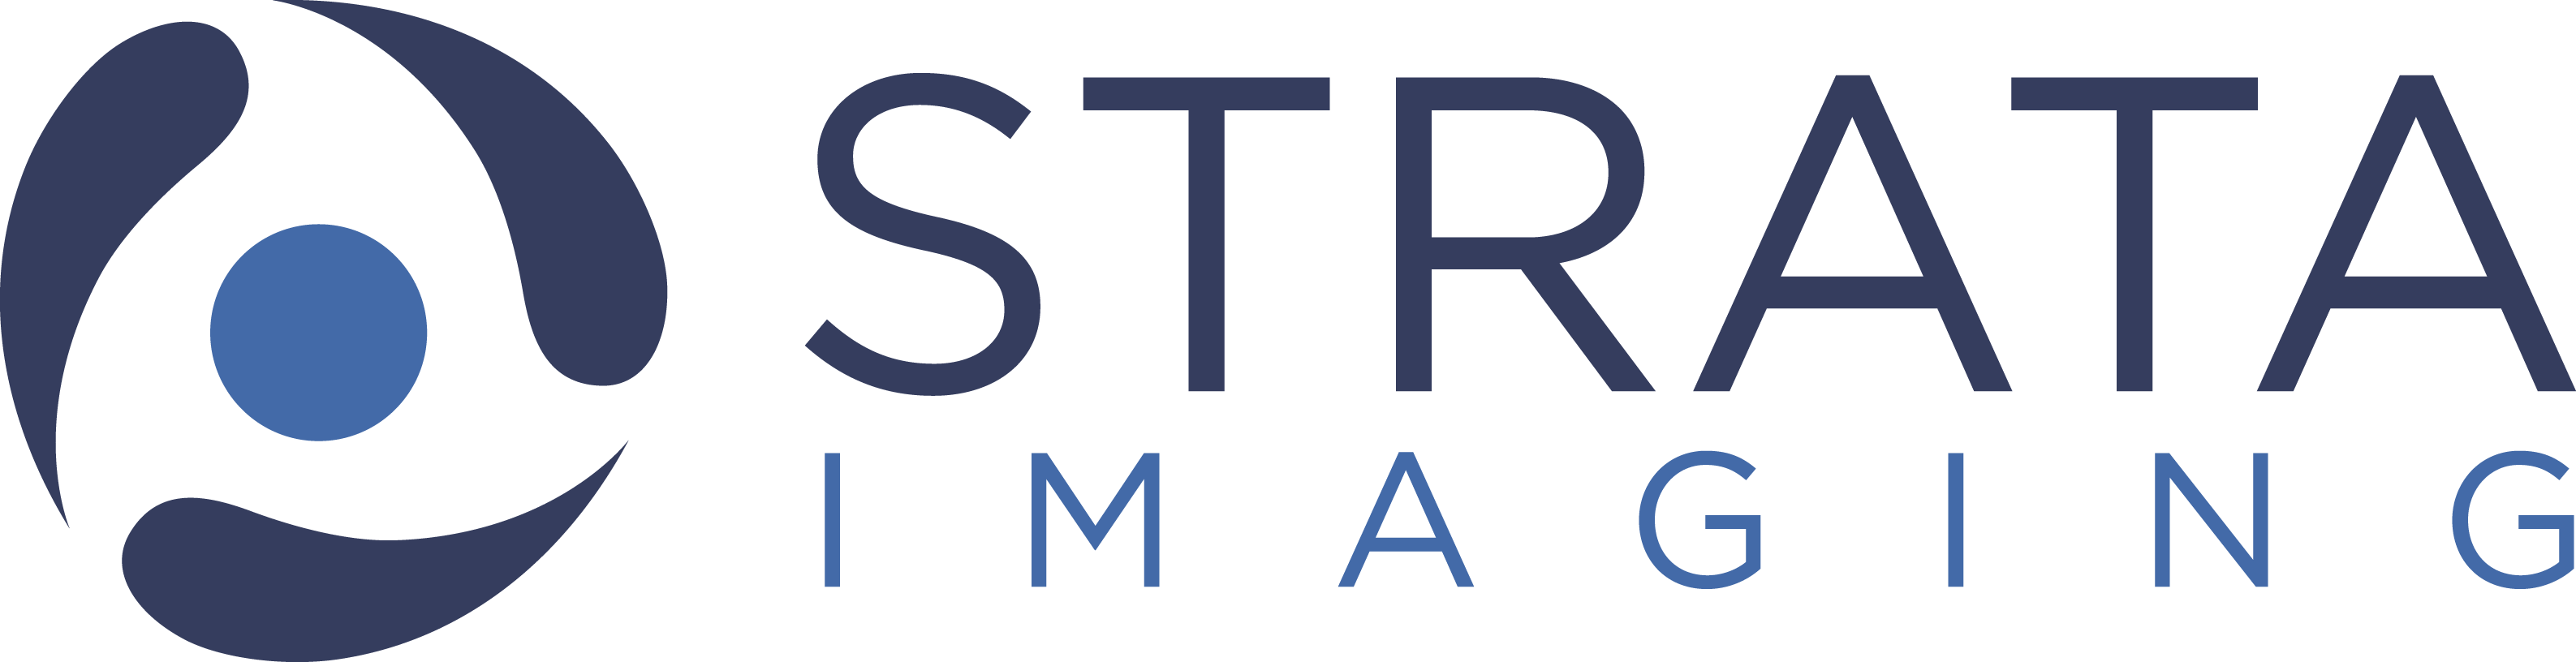 Strata Imaging logo